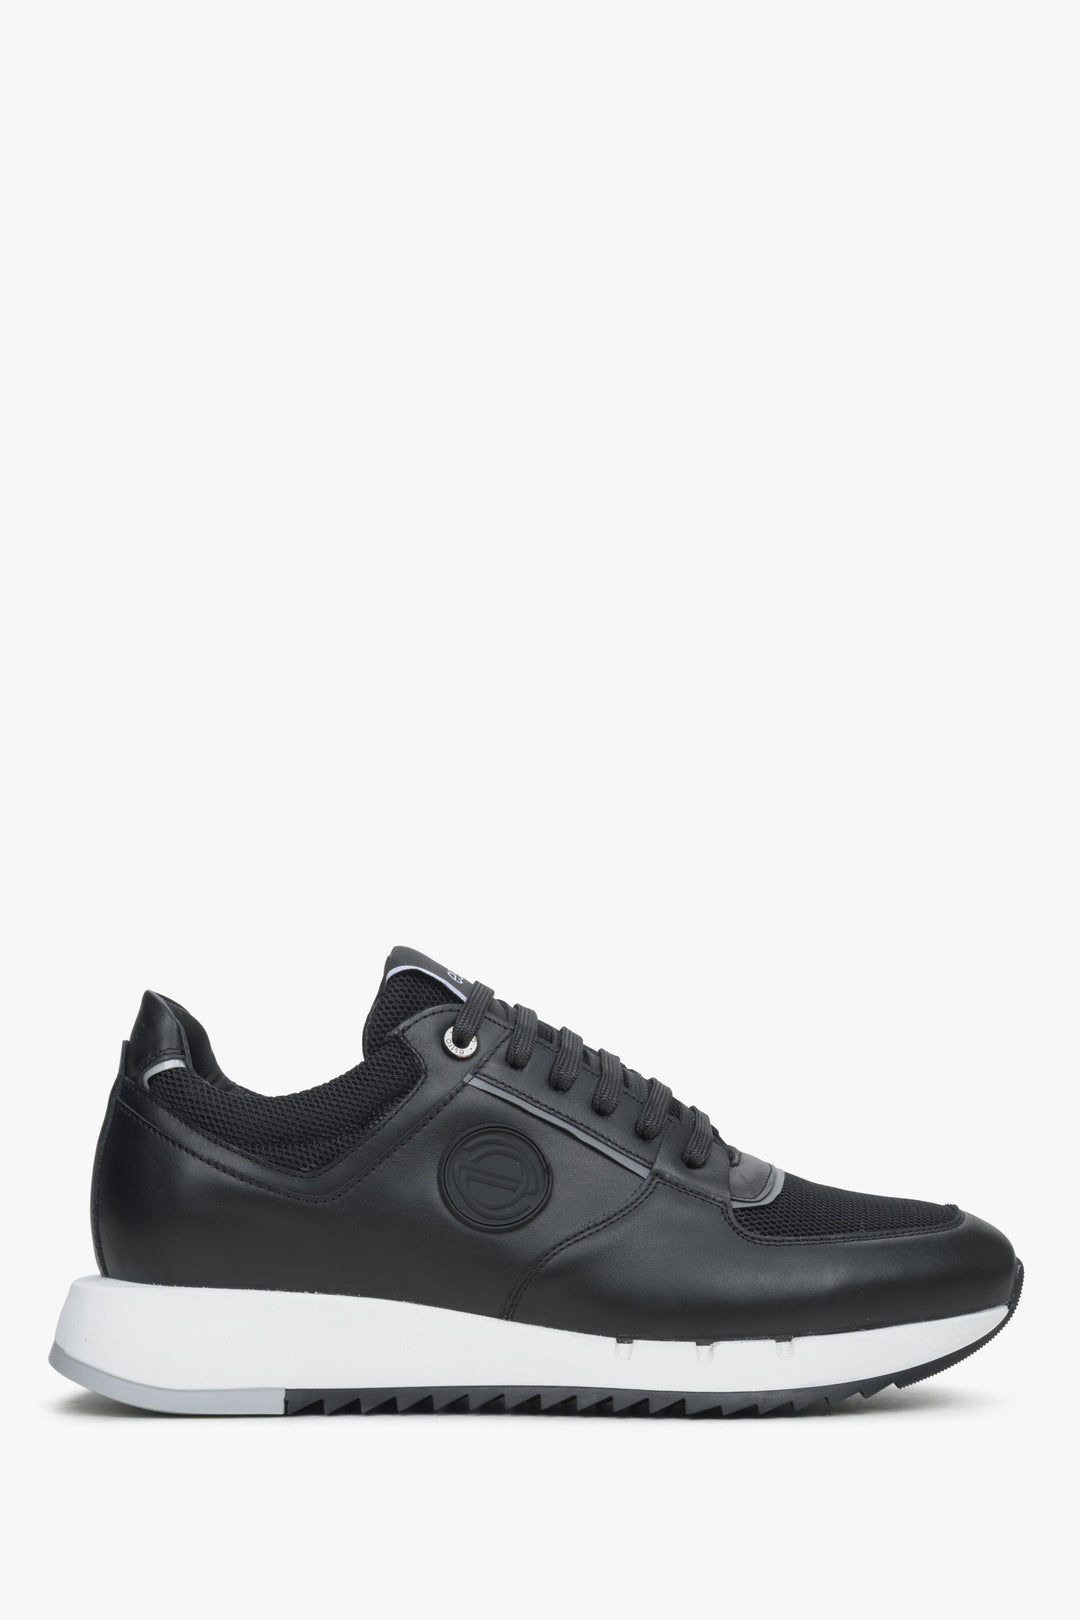 Czarne skórzane sneakersy męskie z elastyczną podeszwą Estro ER00114547